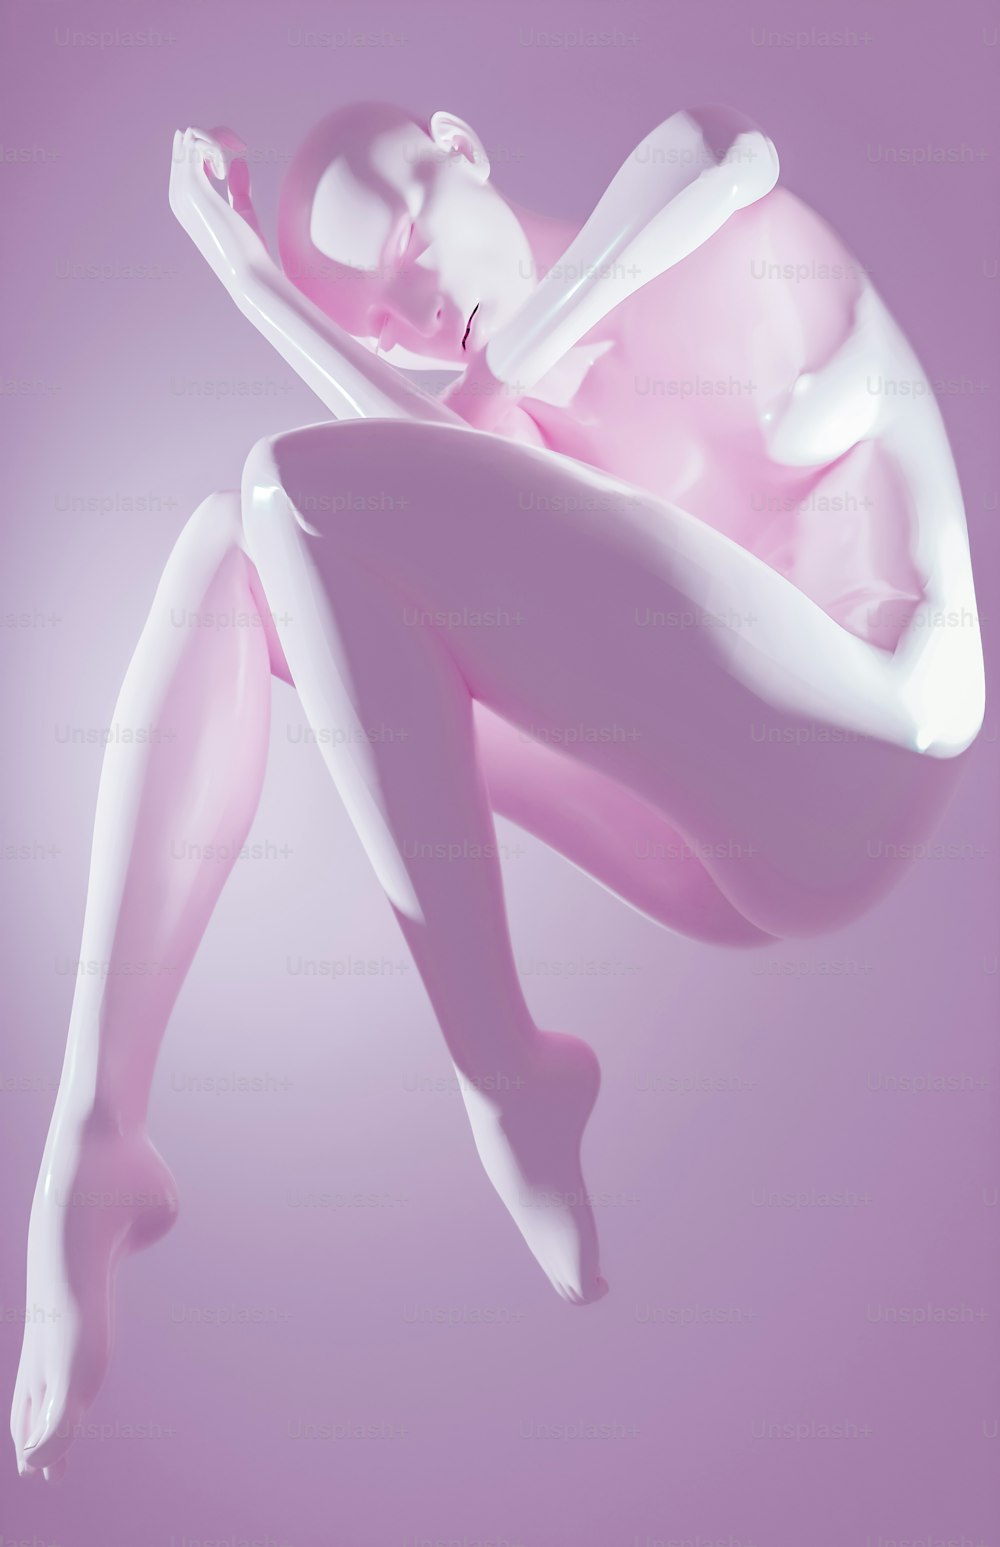 Una foto rosa y blanca de una mujer flotando en el aire